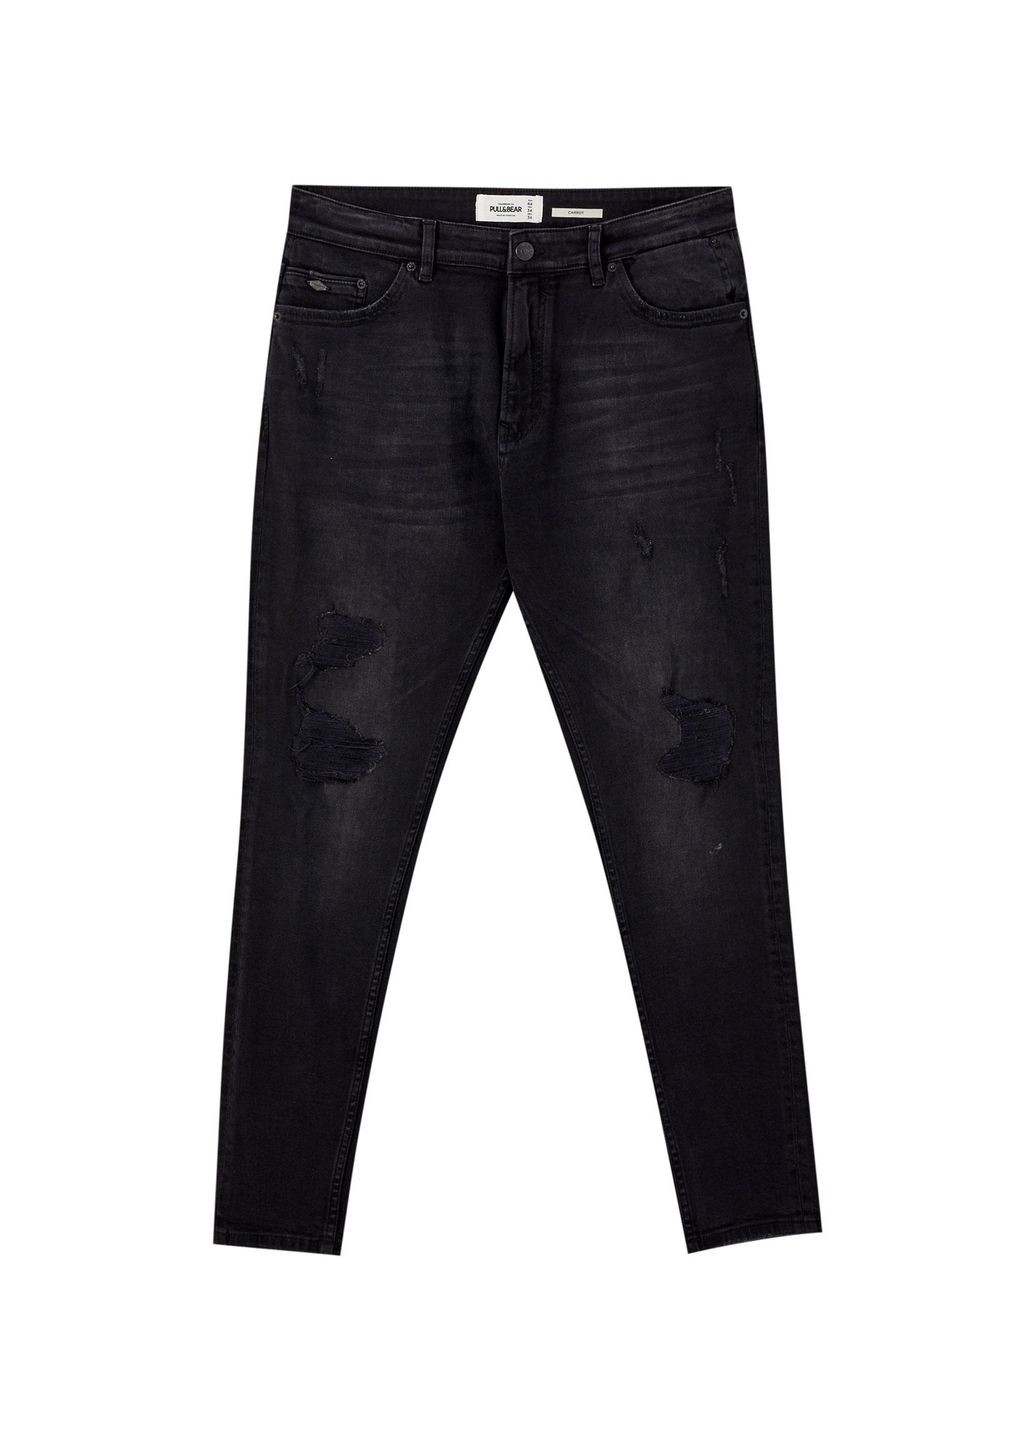 Черные джинси демисезон,черний, Pull & Bear